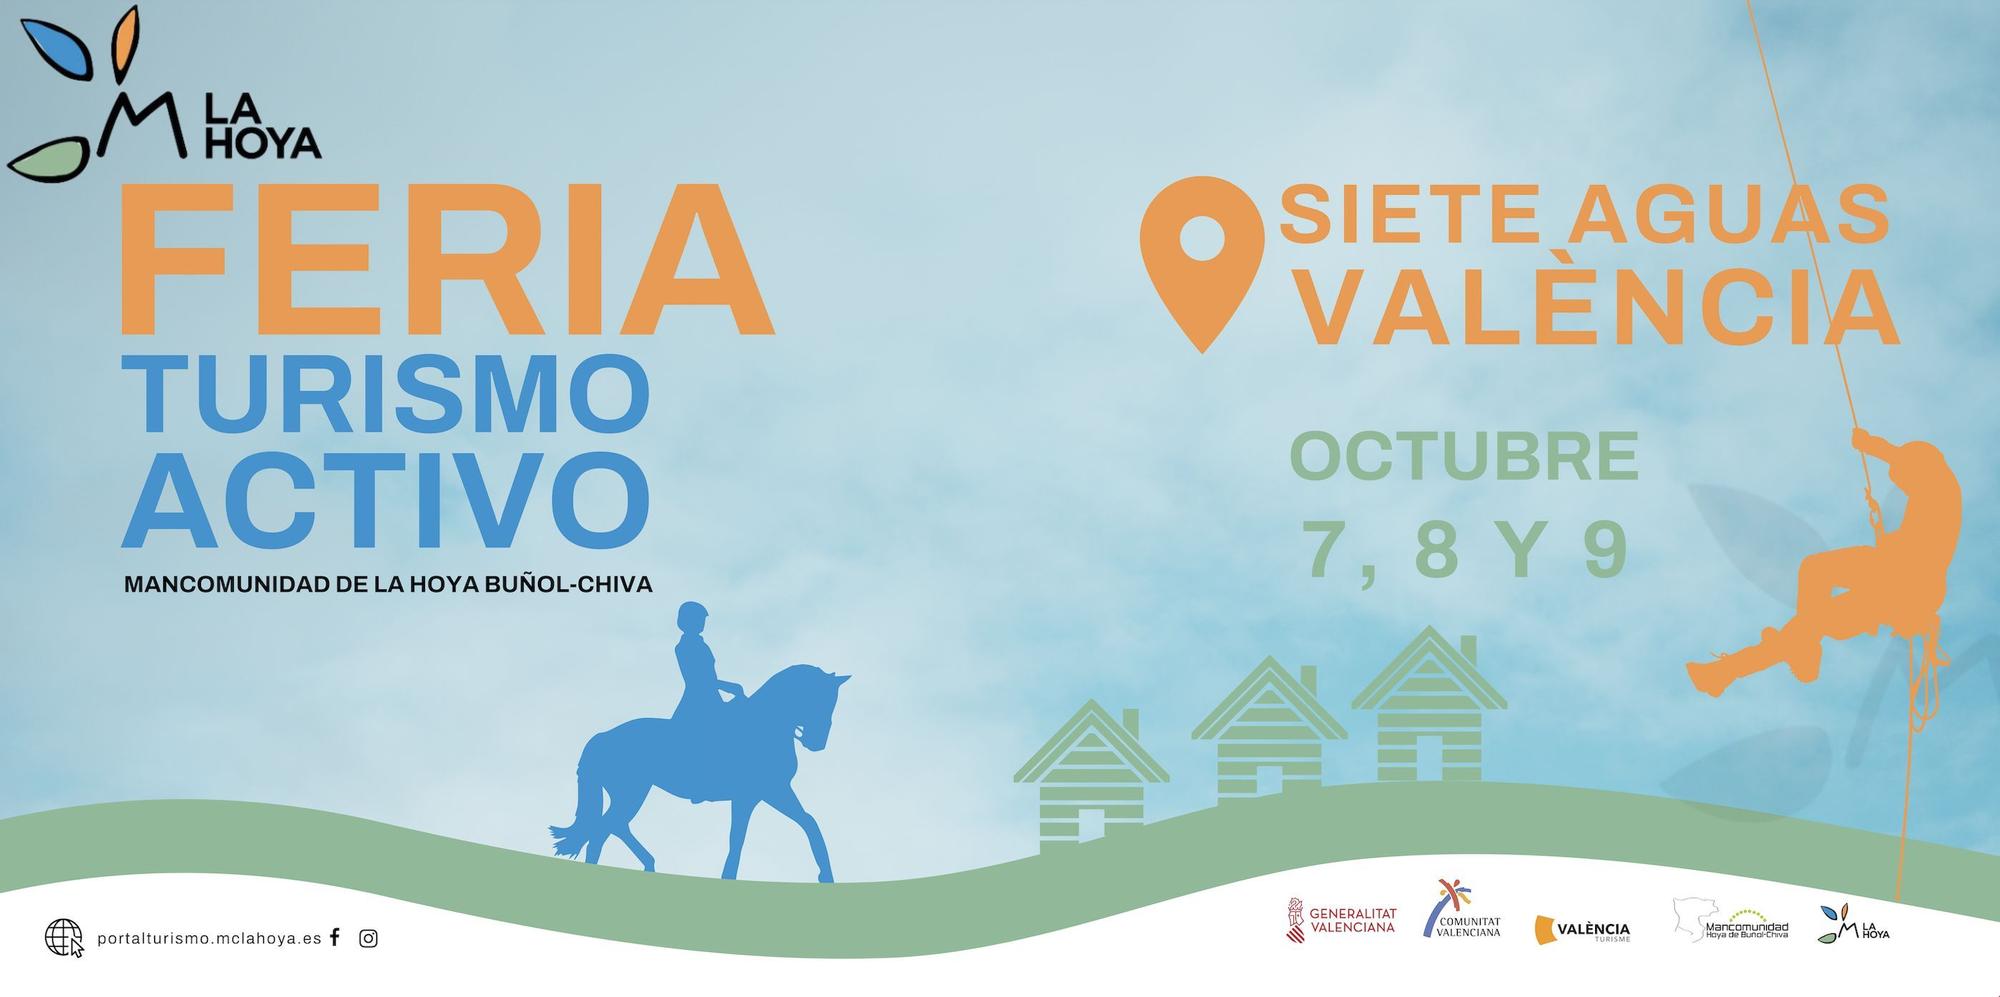 Feria Turismo Activo en La Hoya de Buñol Chiva